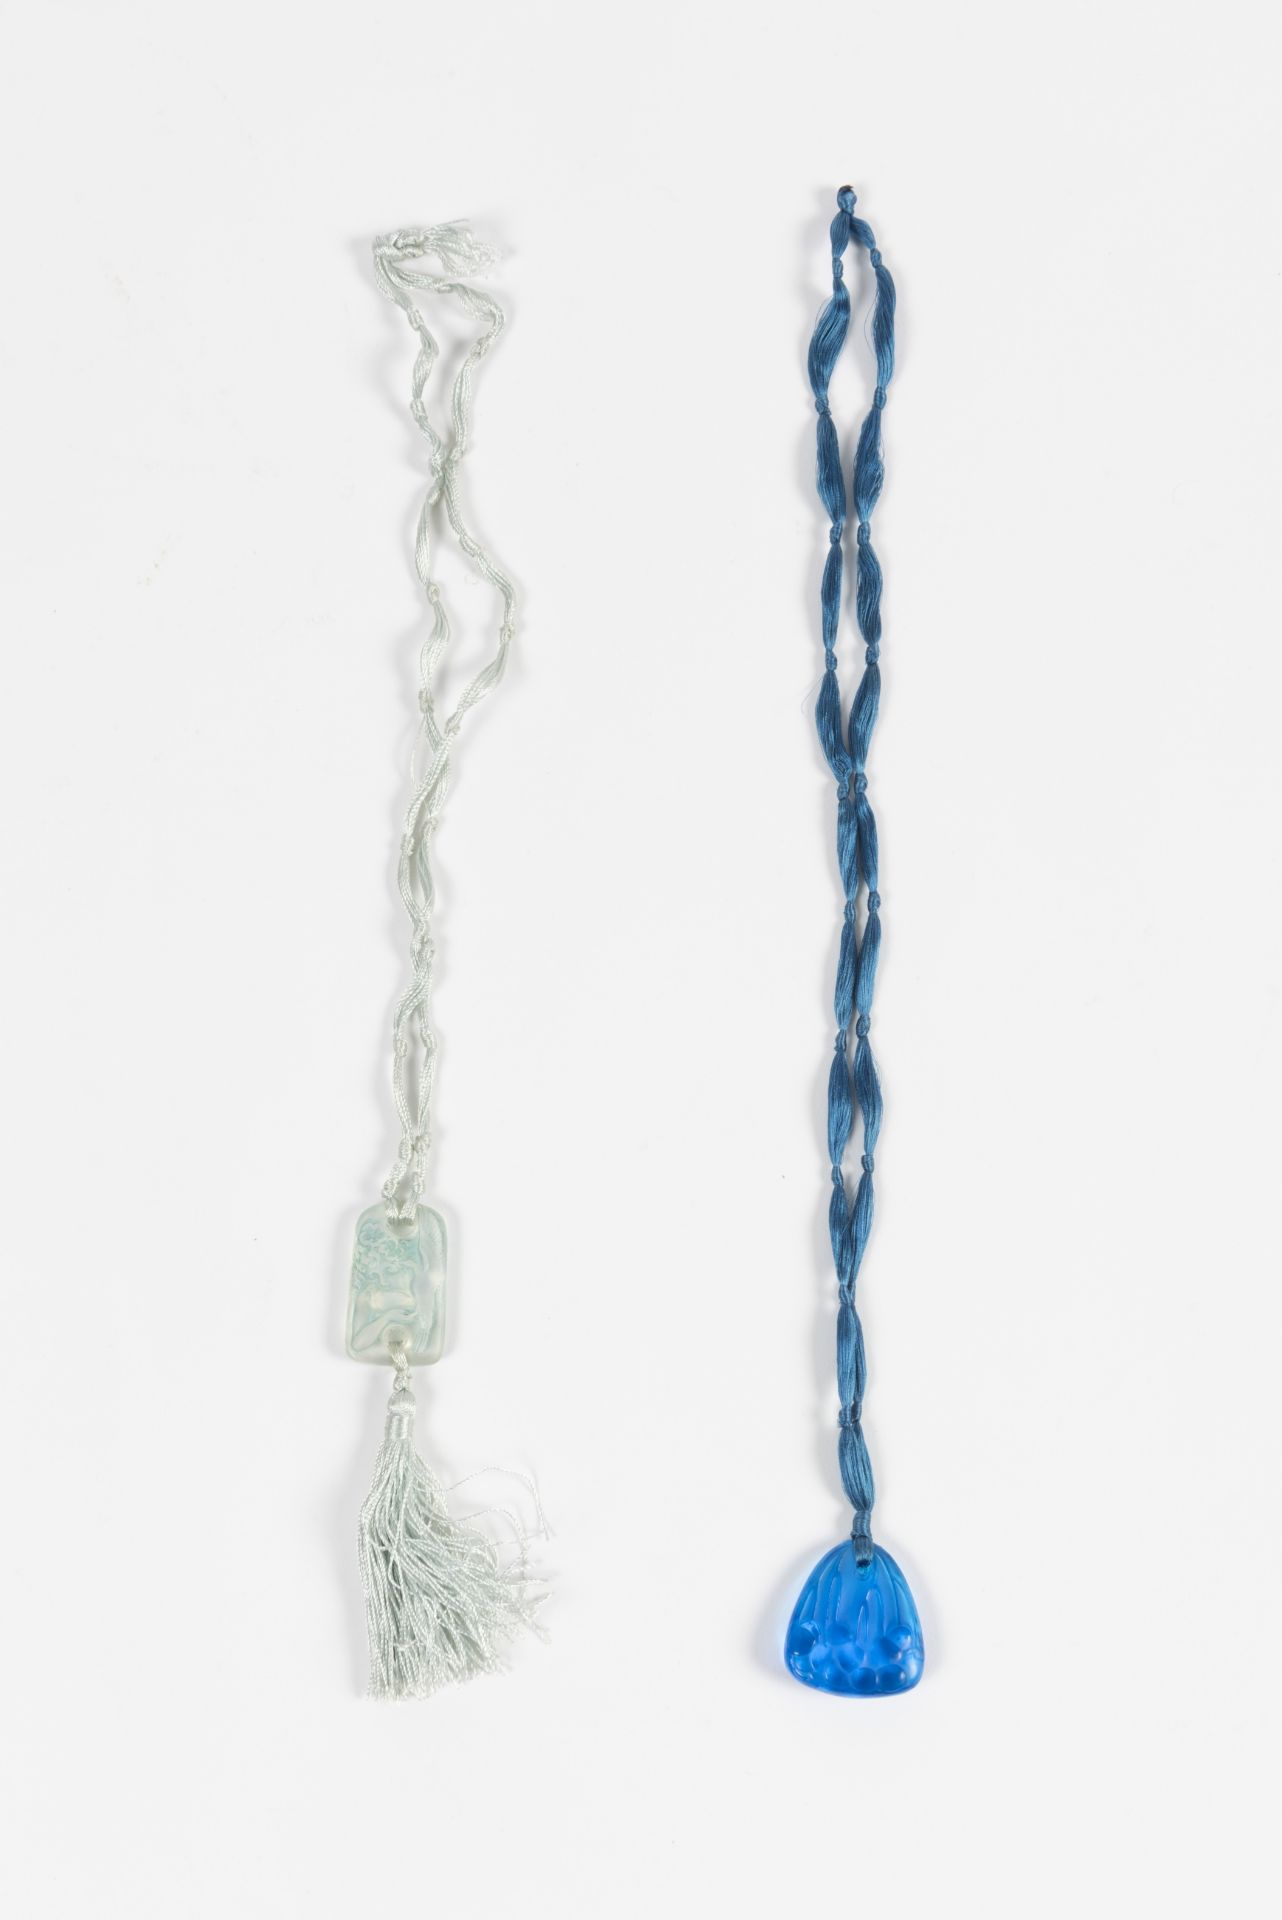 RENE LALIQUE (1860-1945) Suite de deux pendentifs en verre moul&#233; press&#233;, circa 1920